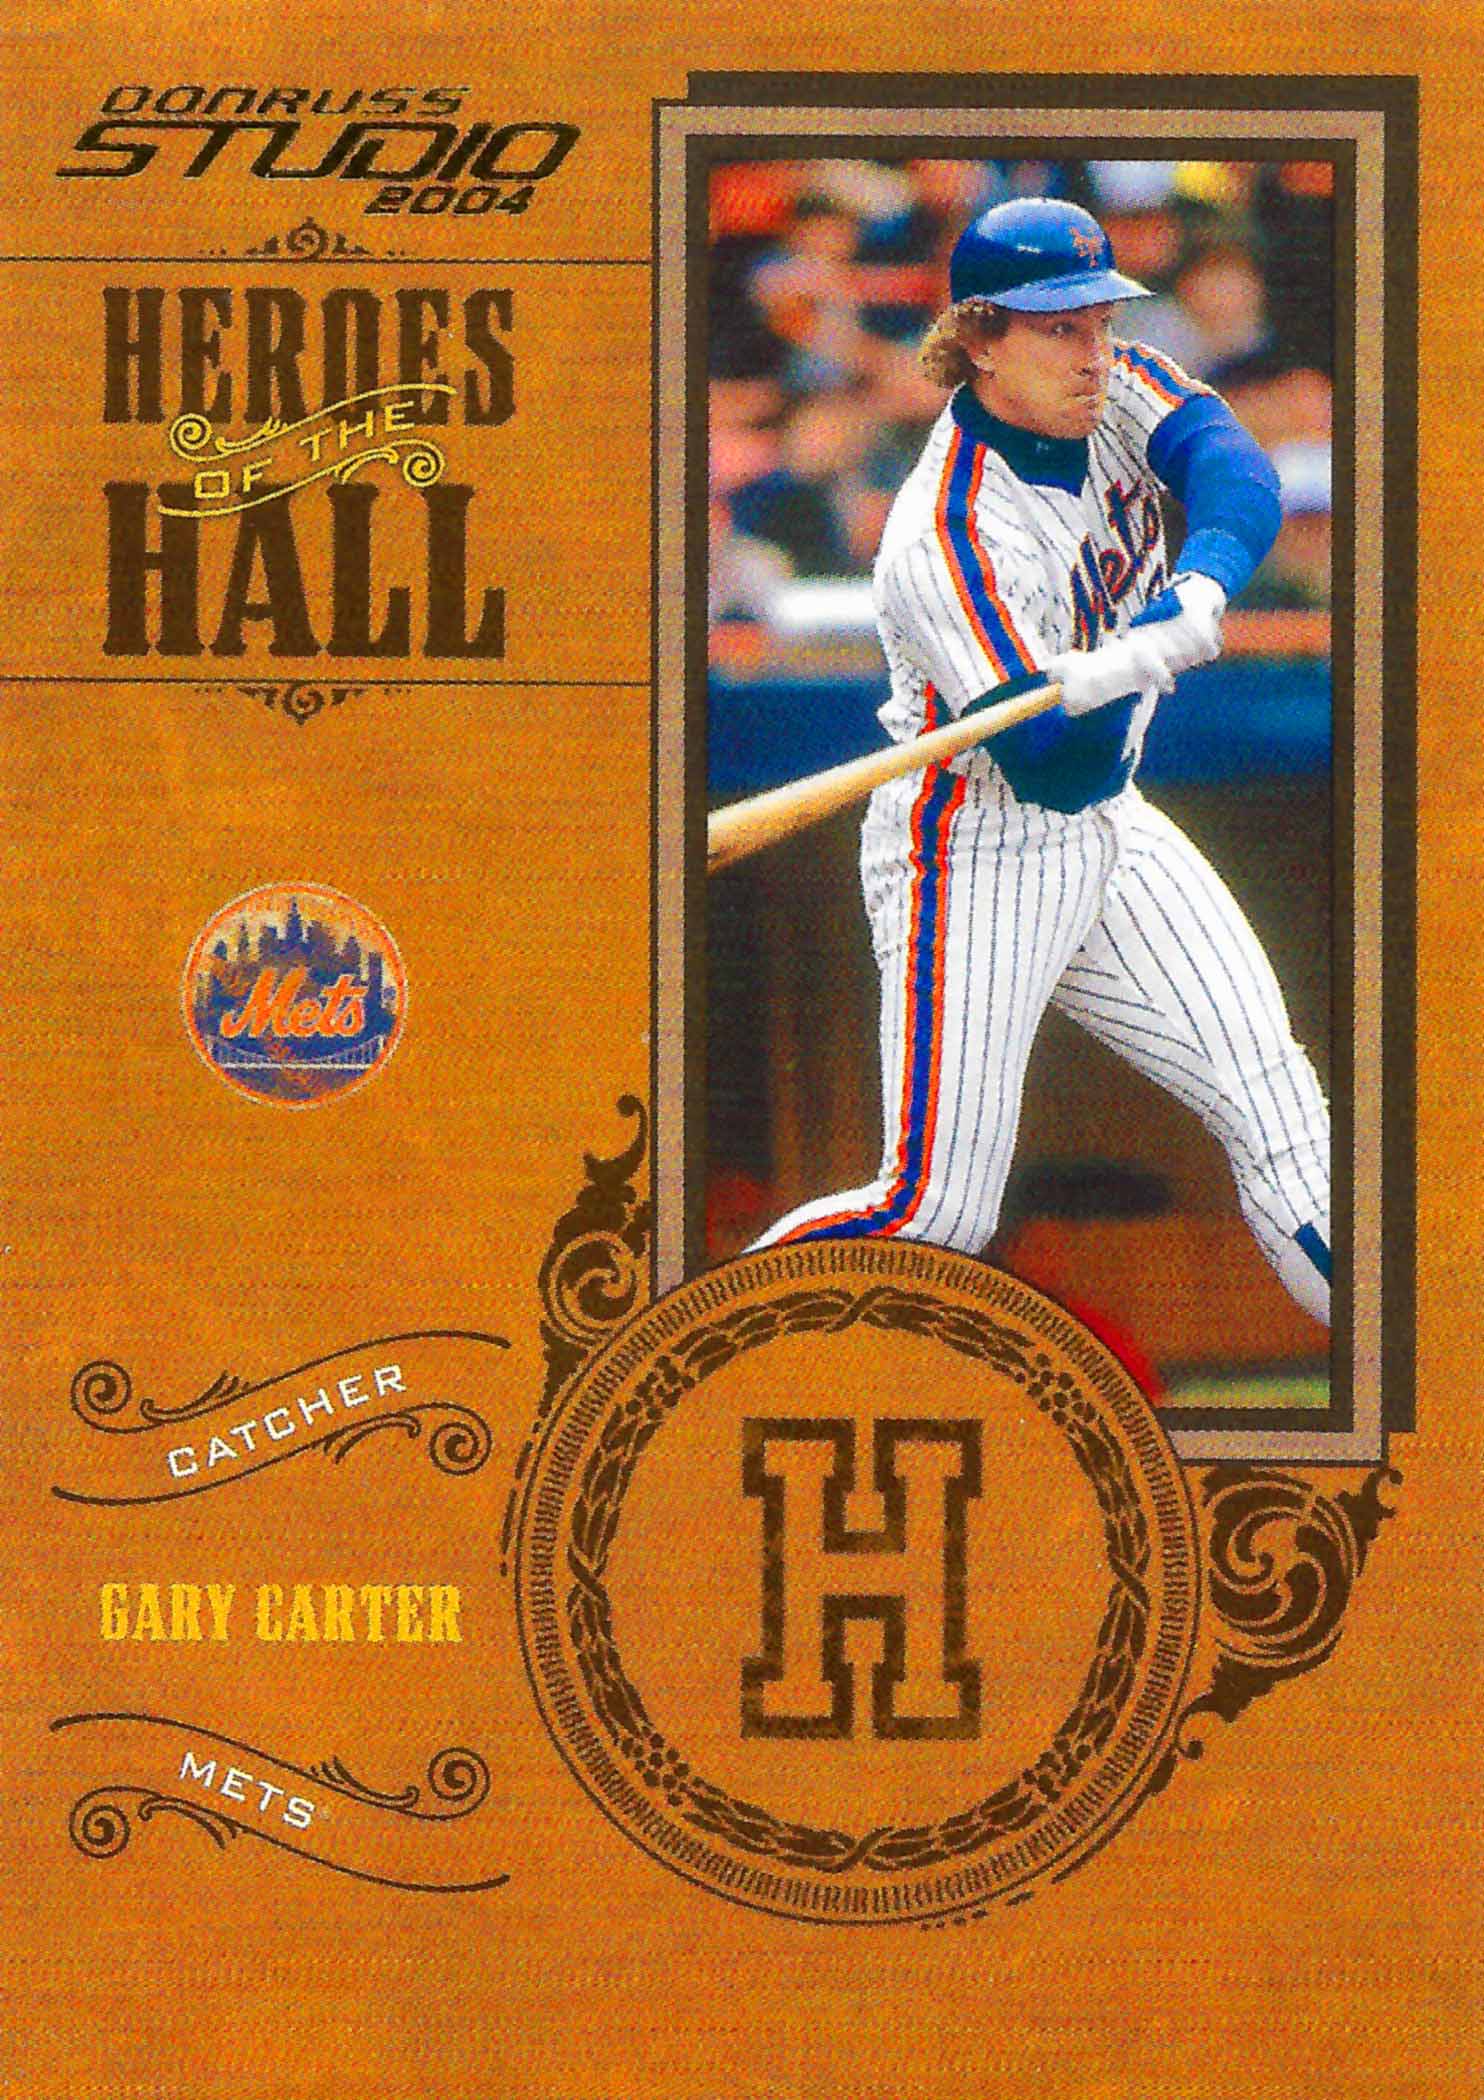 Gary Carter Hall of Fame Plaque, slgckgc